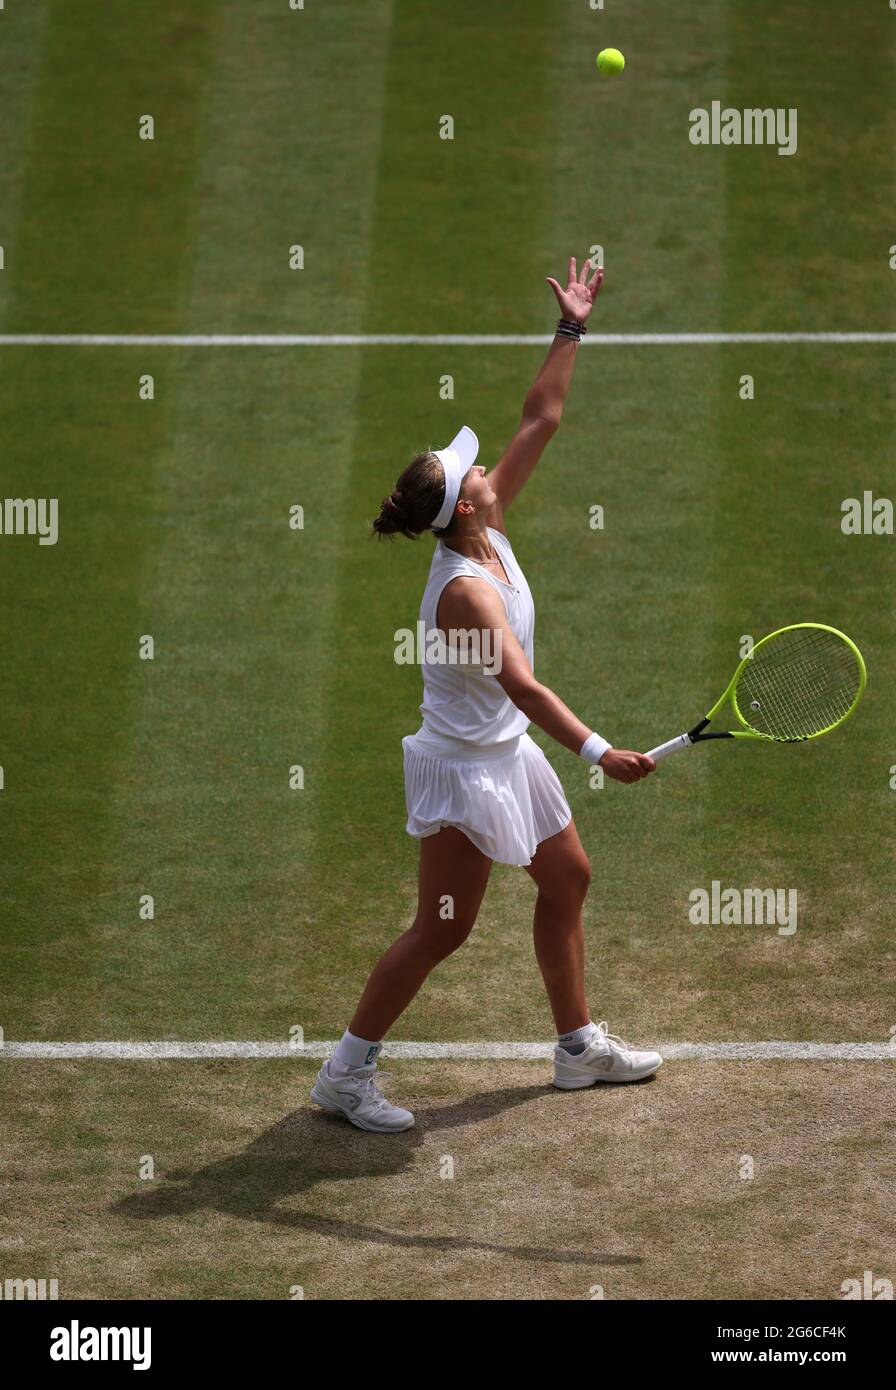 Barbora Krej?íková in azione contro Ashleigh Barty il giorno 7 di Wimbledon all'All England Lawn Tennis and Croquet Club, Wimbledon. Data immagine: Lunedì 5 luglio 2021. Foto Stock